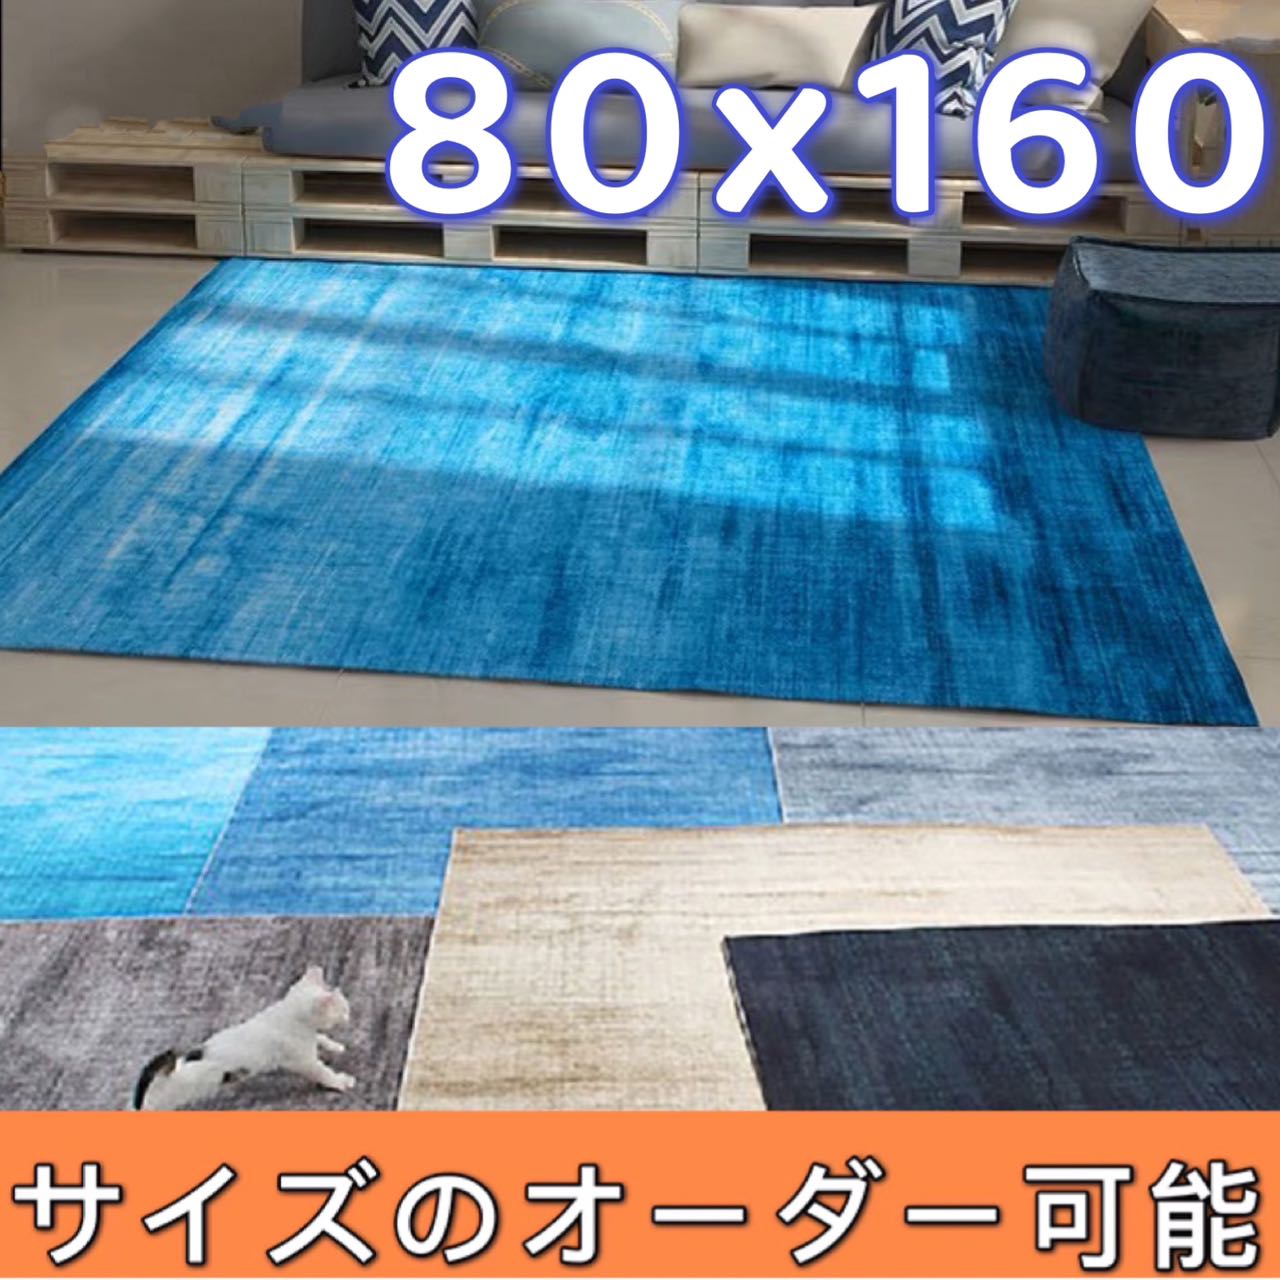 【楽天市場】ラグ 140×200 ラグマット 厚手 冬用 床暖房対応 こたつ